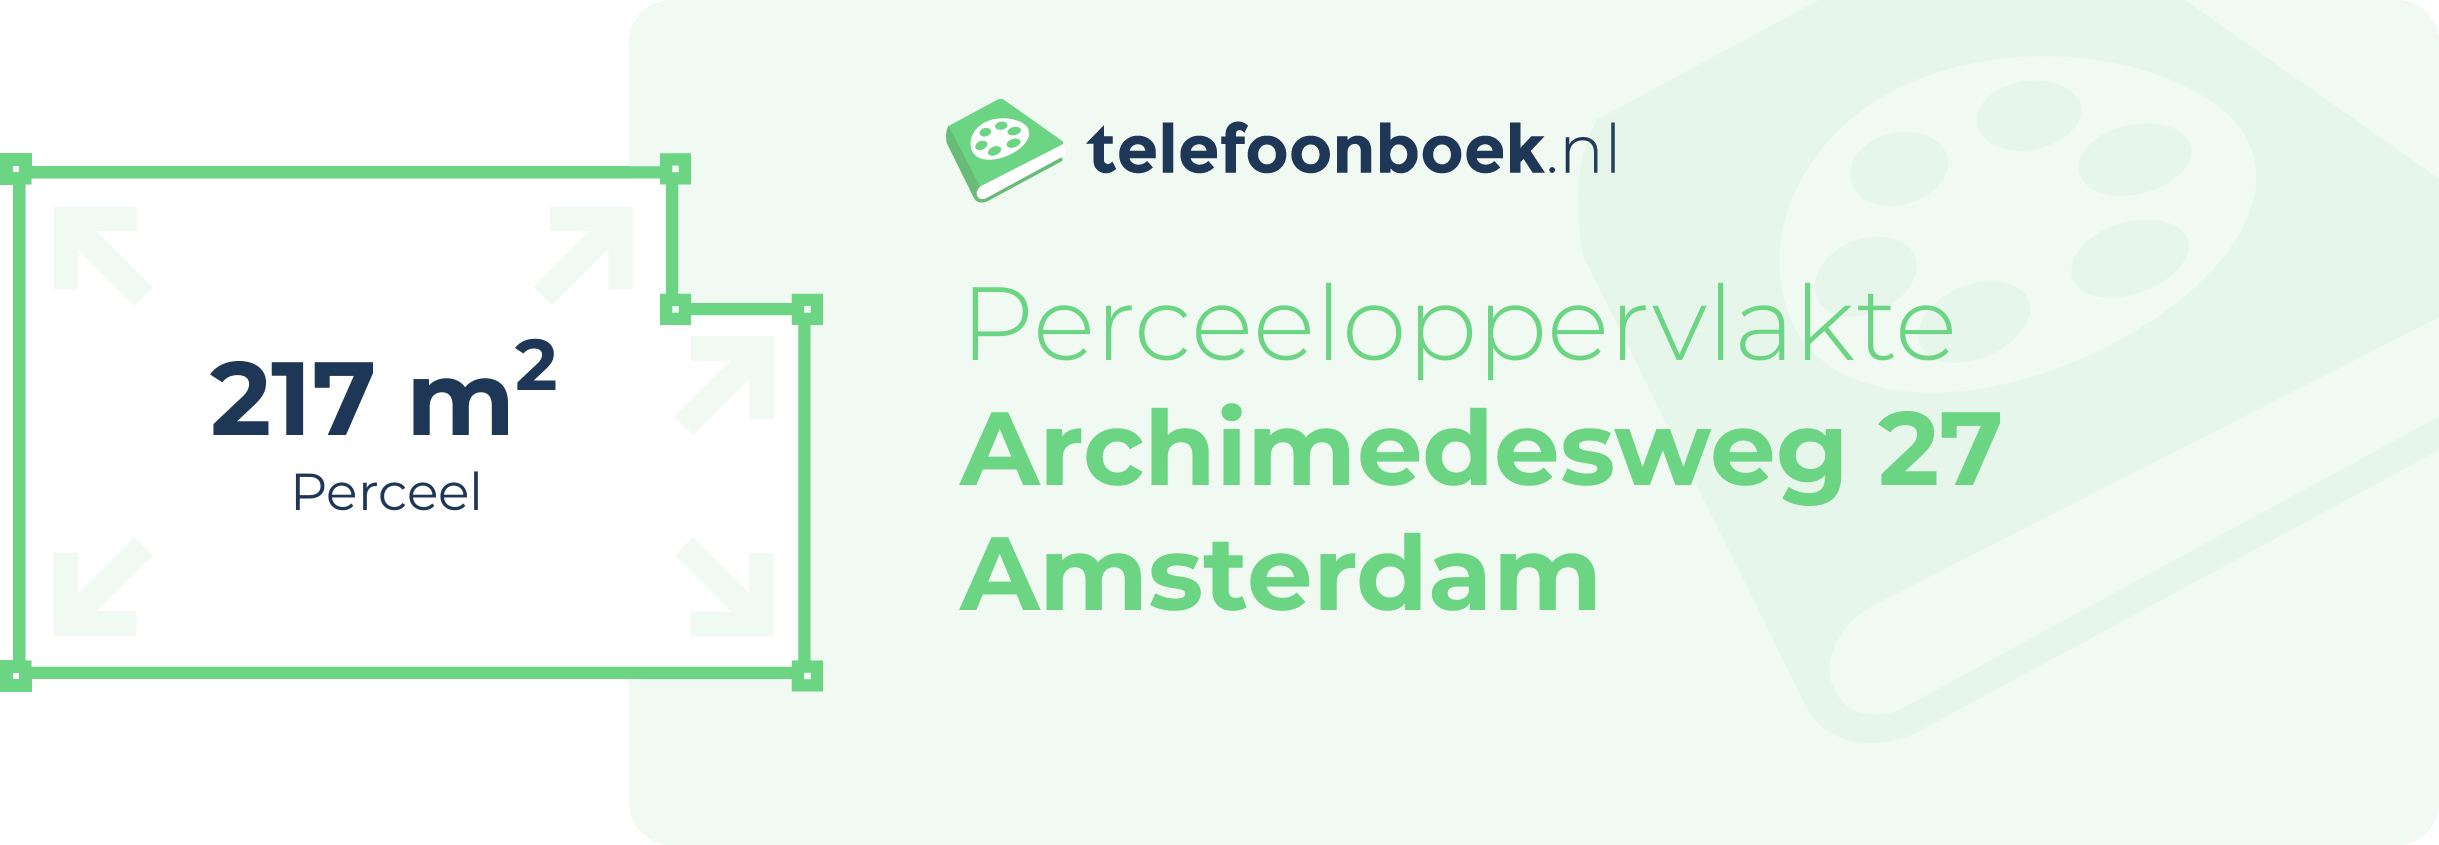 Perceeloppervlakte Archimedesweg 27 Amsterdam